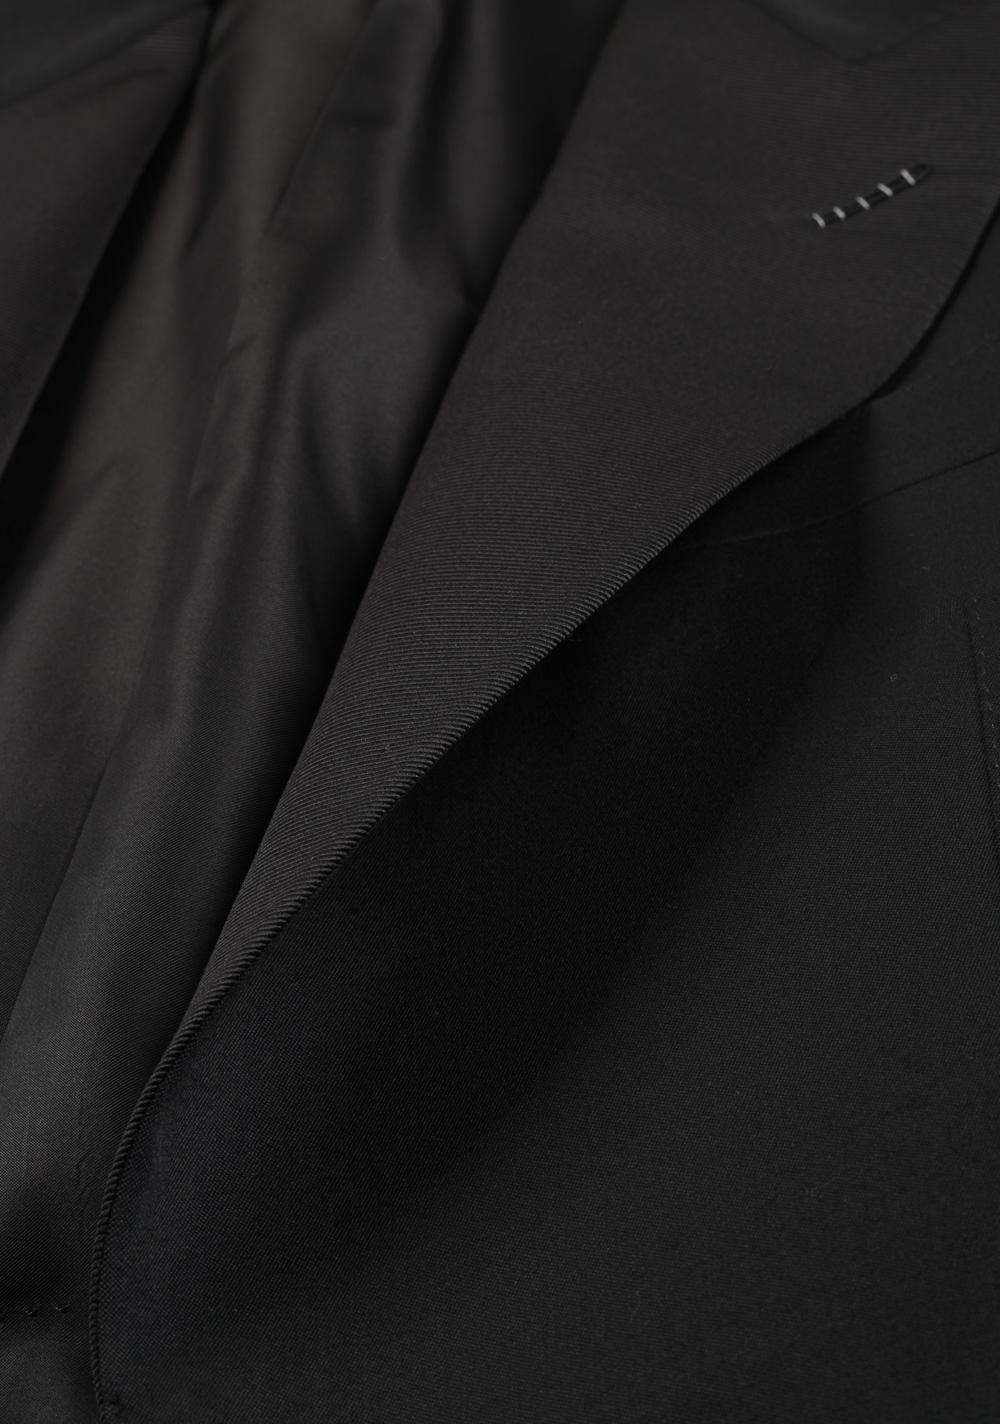 TOM FORD Windsor Black Tuxedo Smoking Suit Size 58L / 48L U.S. Fit A | Costume Limité